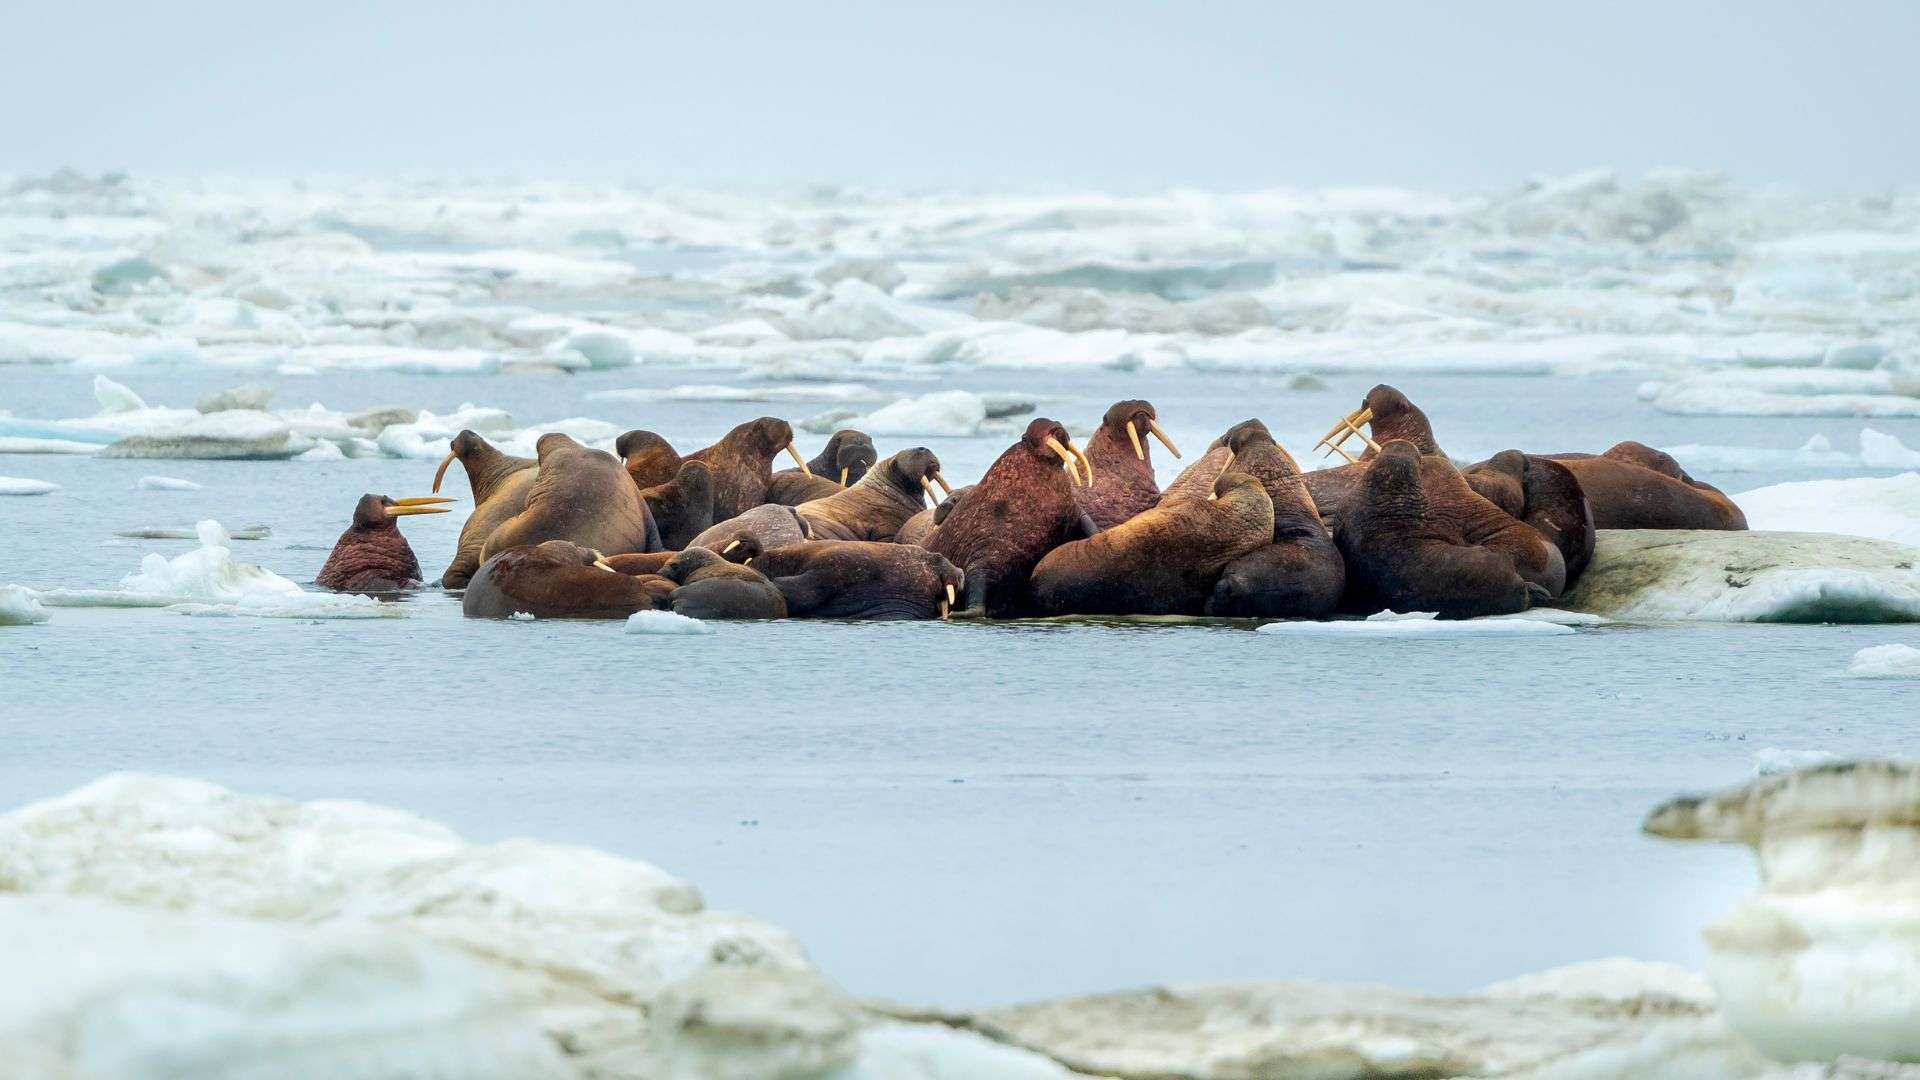 A herd of walruses (Odobenus rosmarus) on an ice floe. Svalbard, Norway.